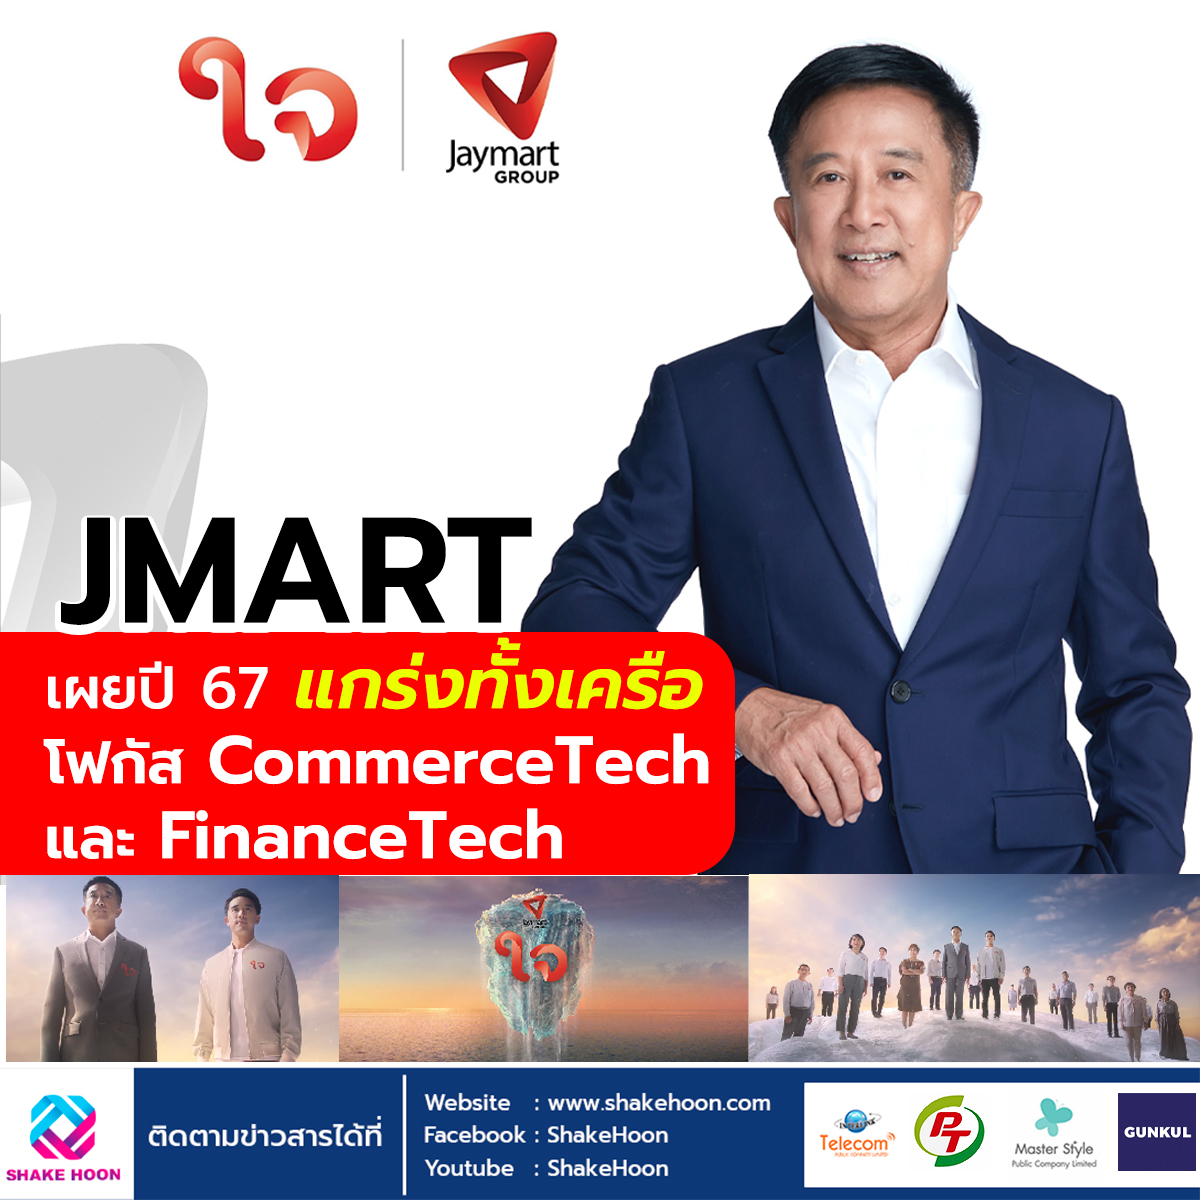 JMART Group เผยปี 67 แกร่งทั้งเครือ โฟกัส CommerceTech และ FinanceTech